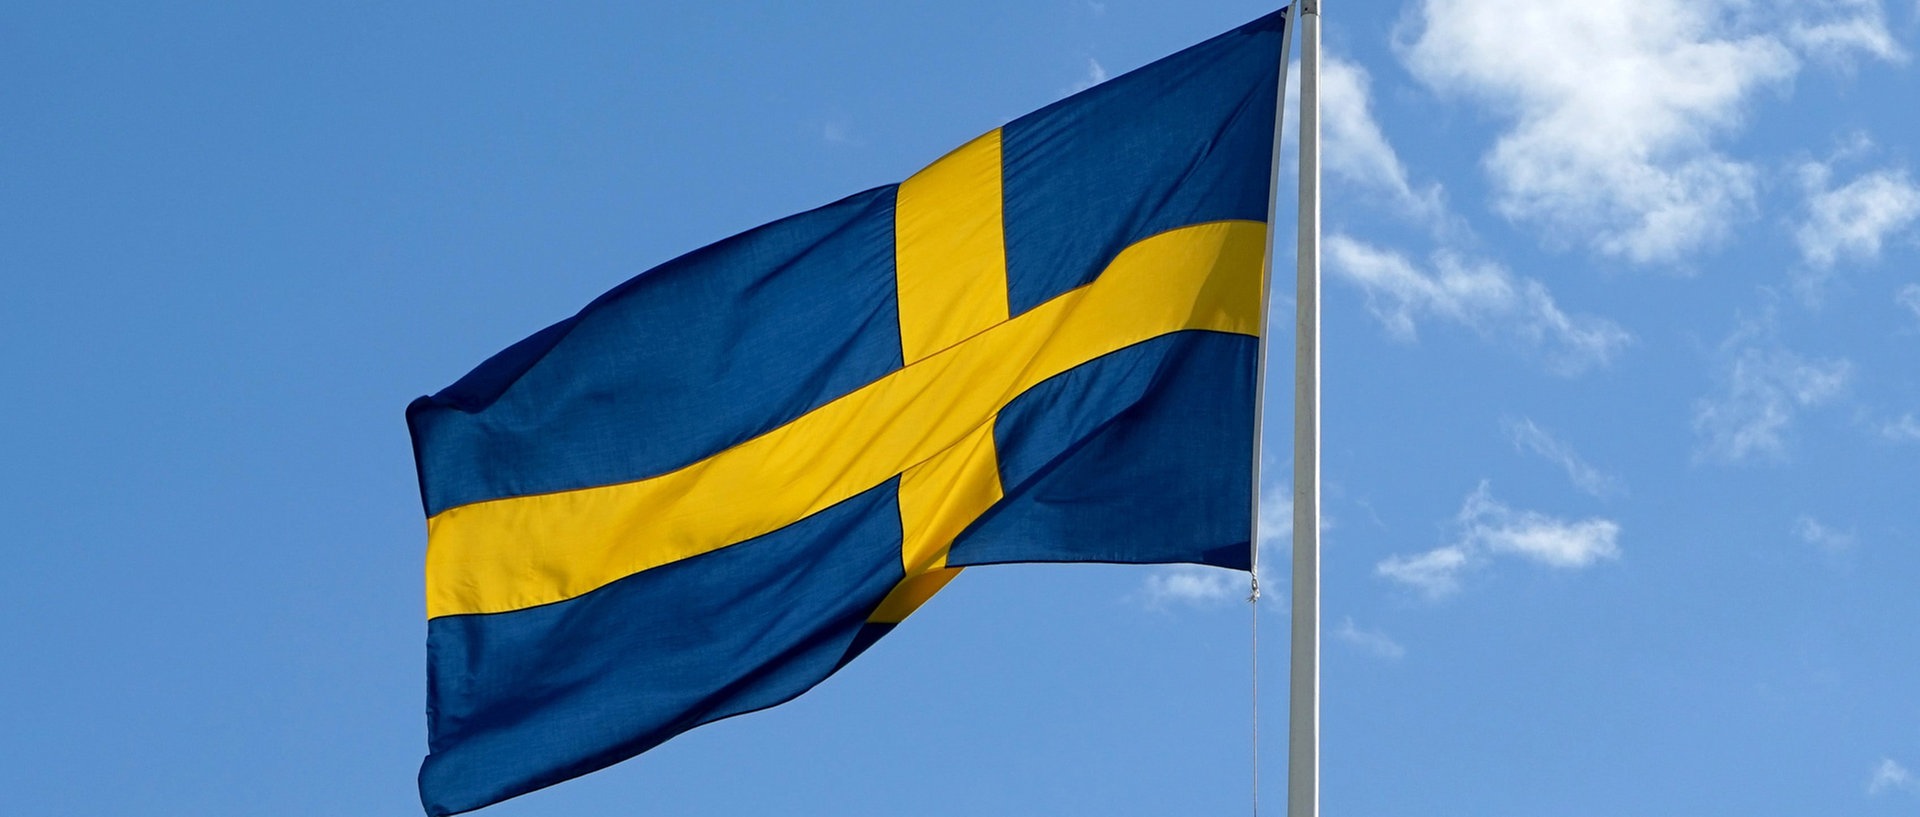 Die schwedische Nationalflagge weht an einem Mast im Wind., © picture alliance/dpaFoto: Daniel Kalker